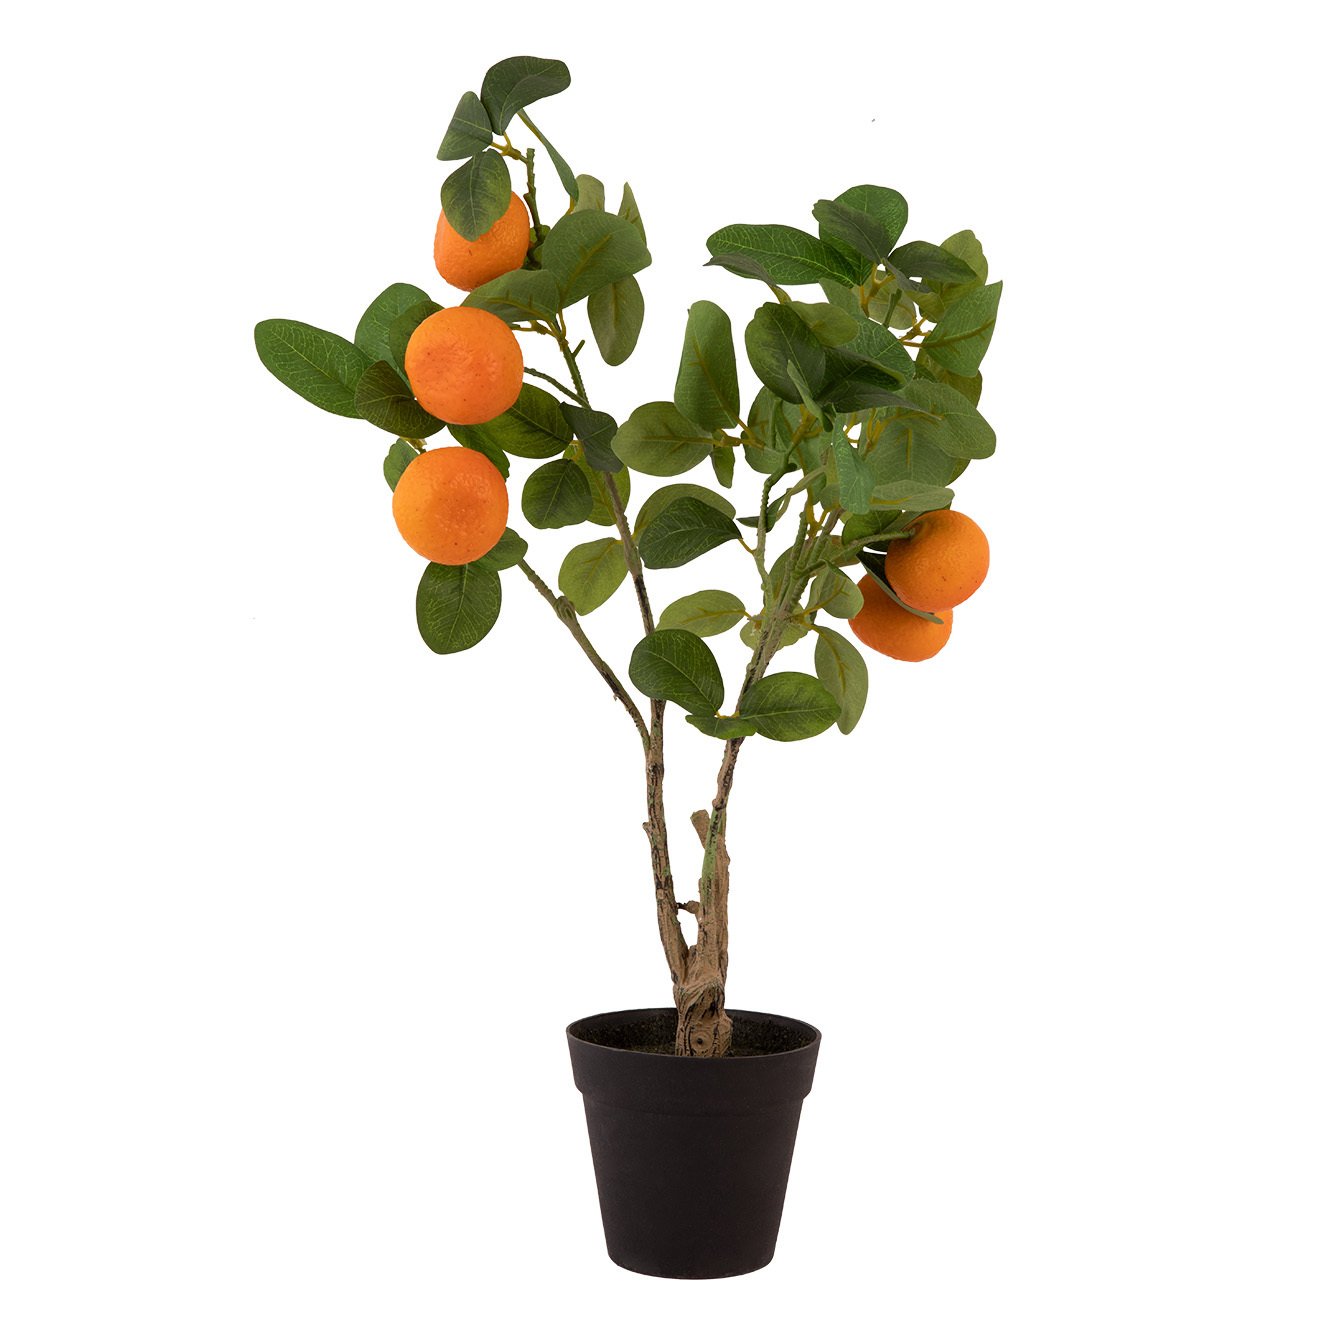 Portakal Yapay Meyve Ağacı (50 cm)